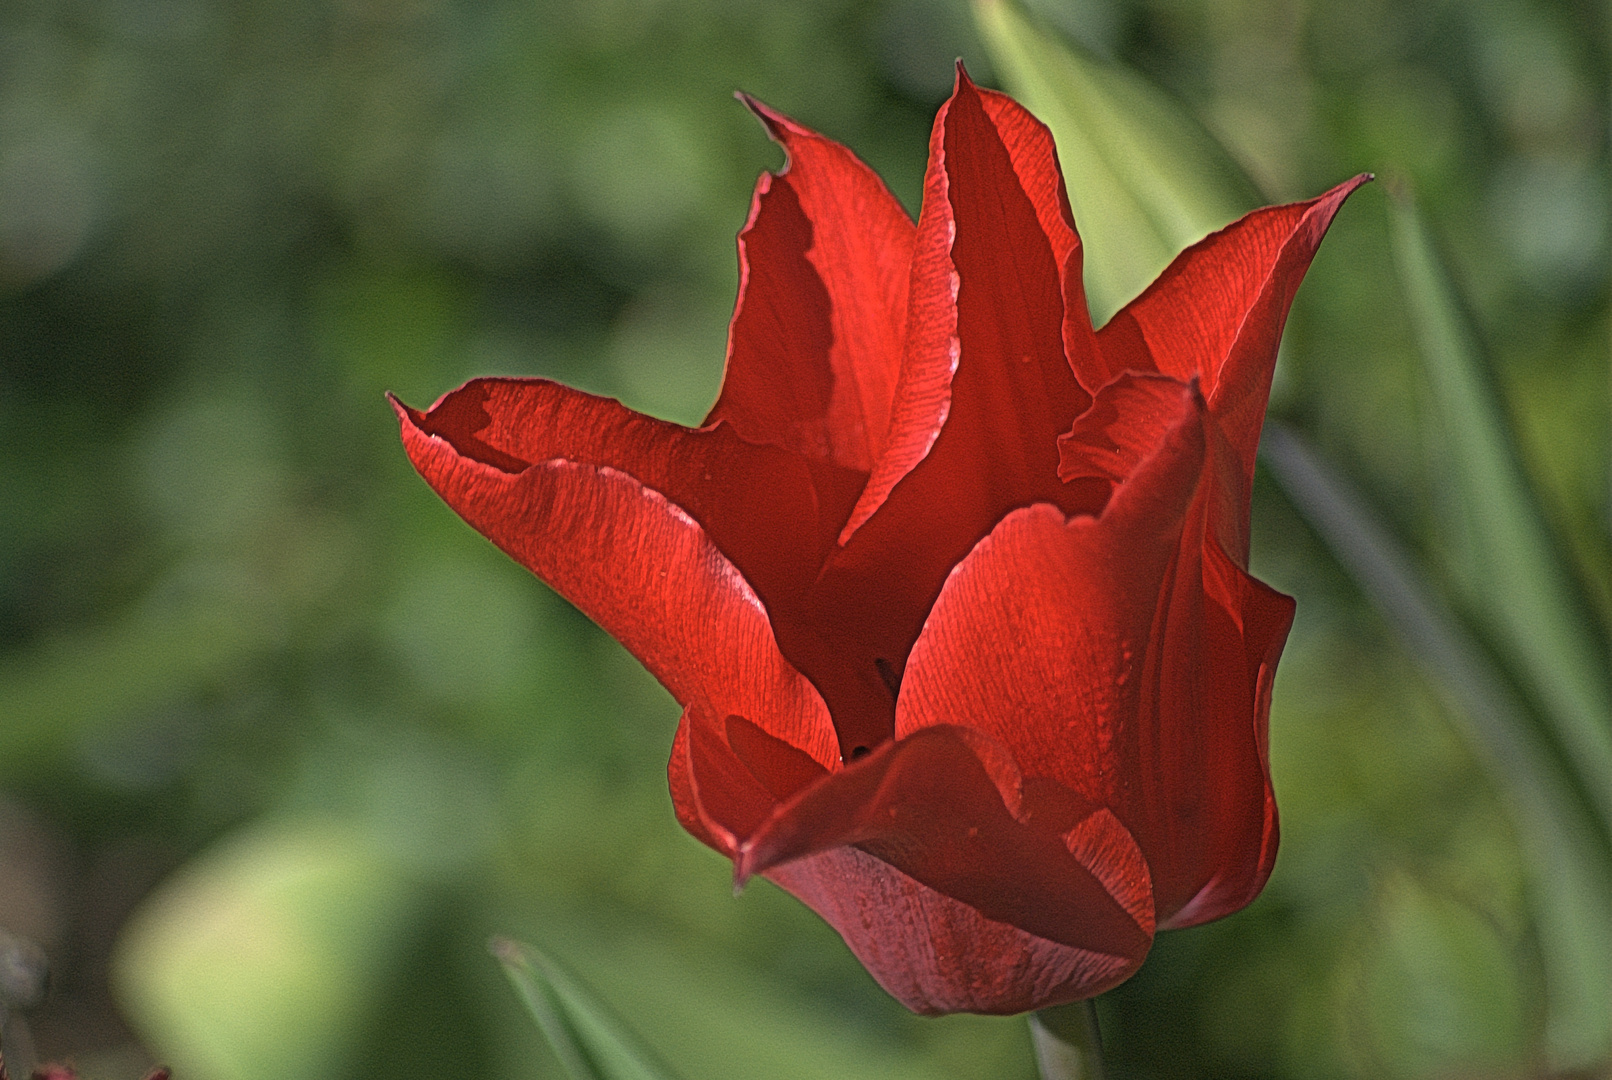 Tulpen (1)